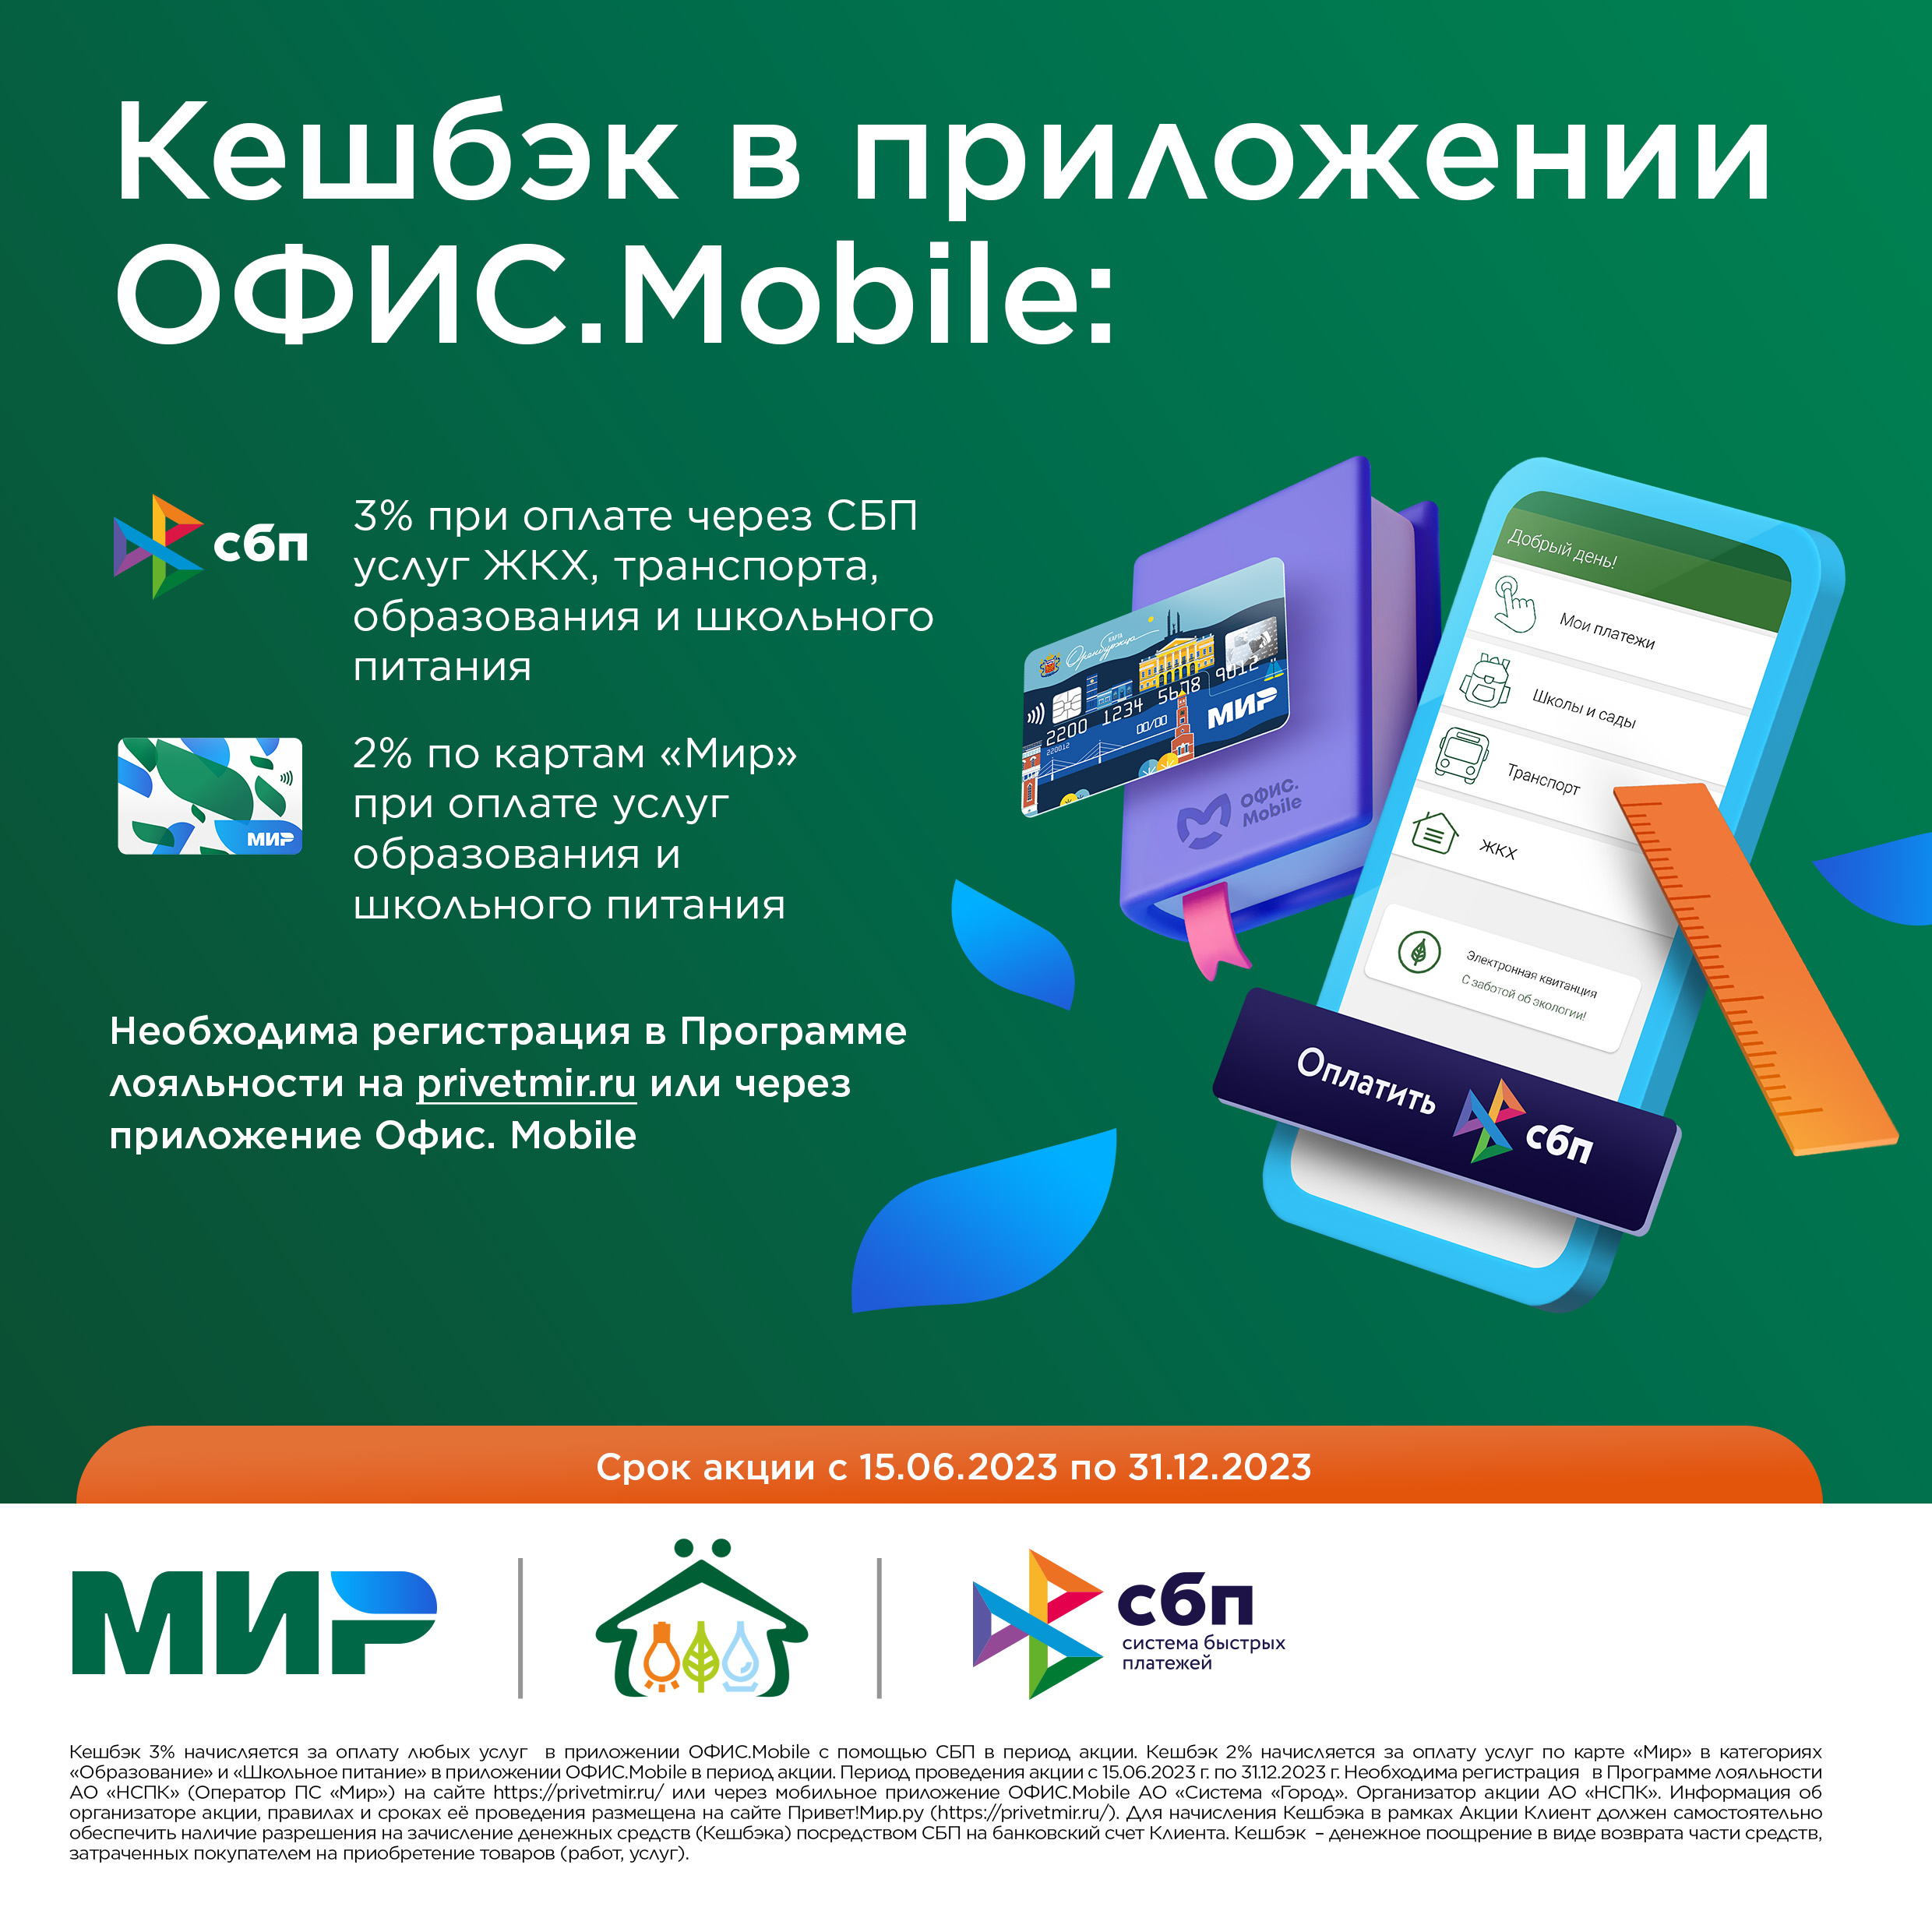 Оплачивайте услуги через мобильное приложение ОФИС.Mobile и получайте кешбэк*!.